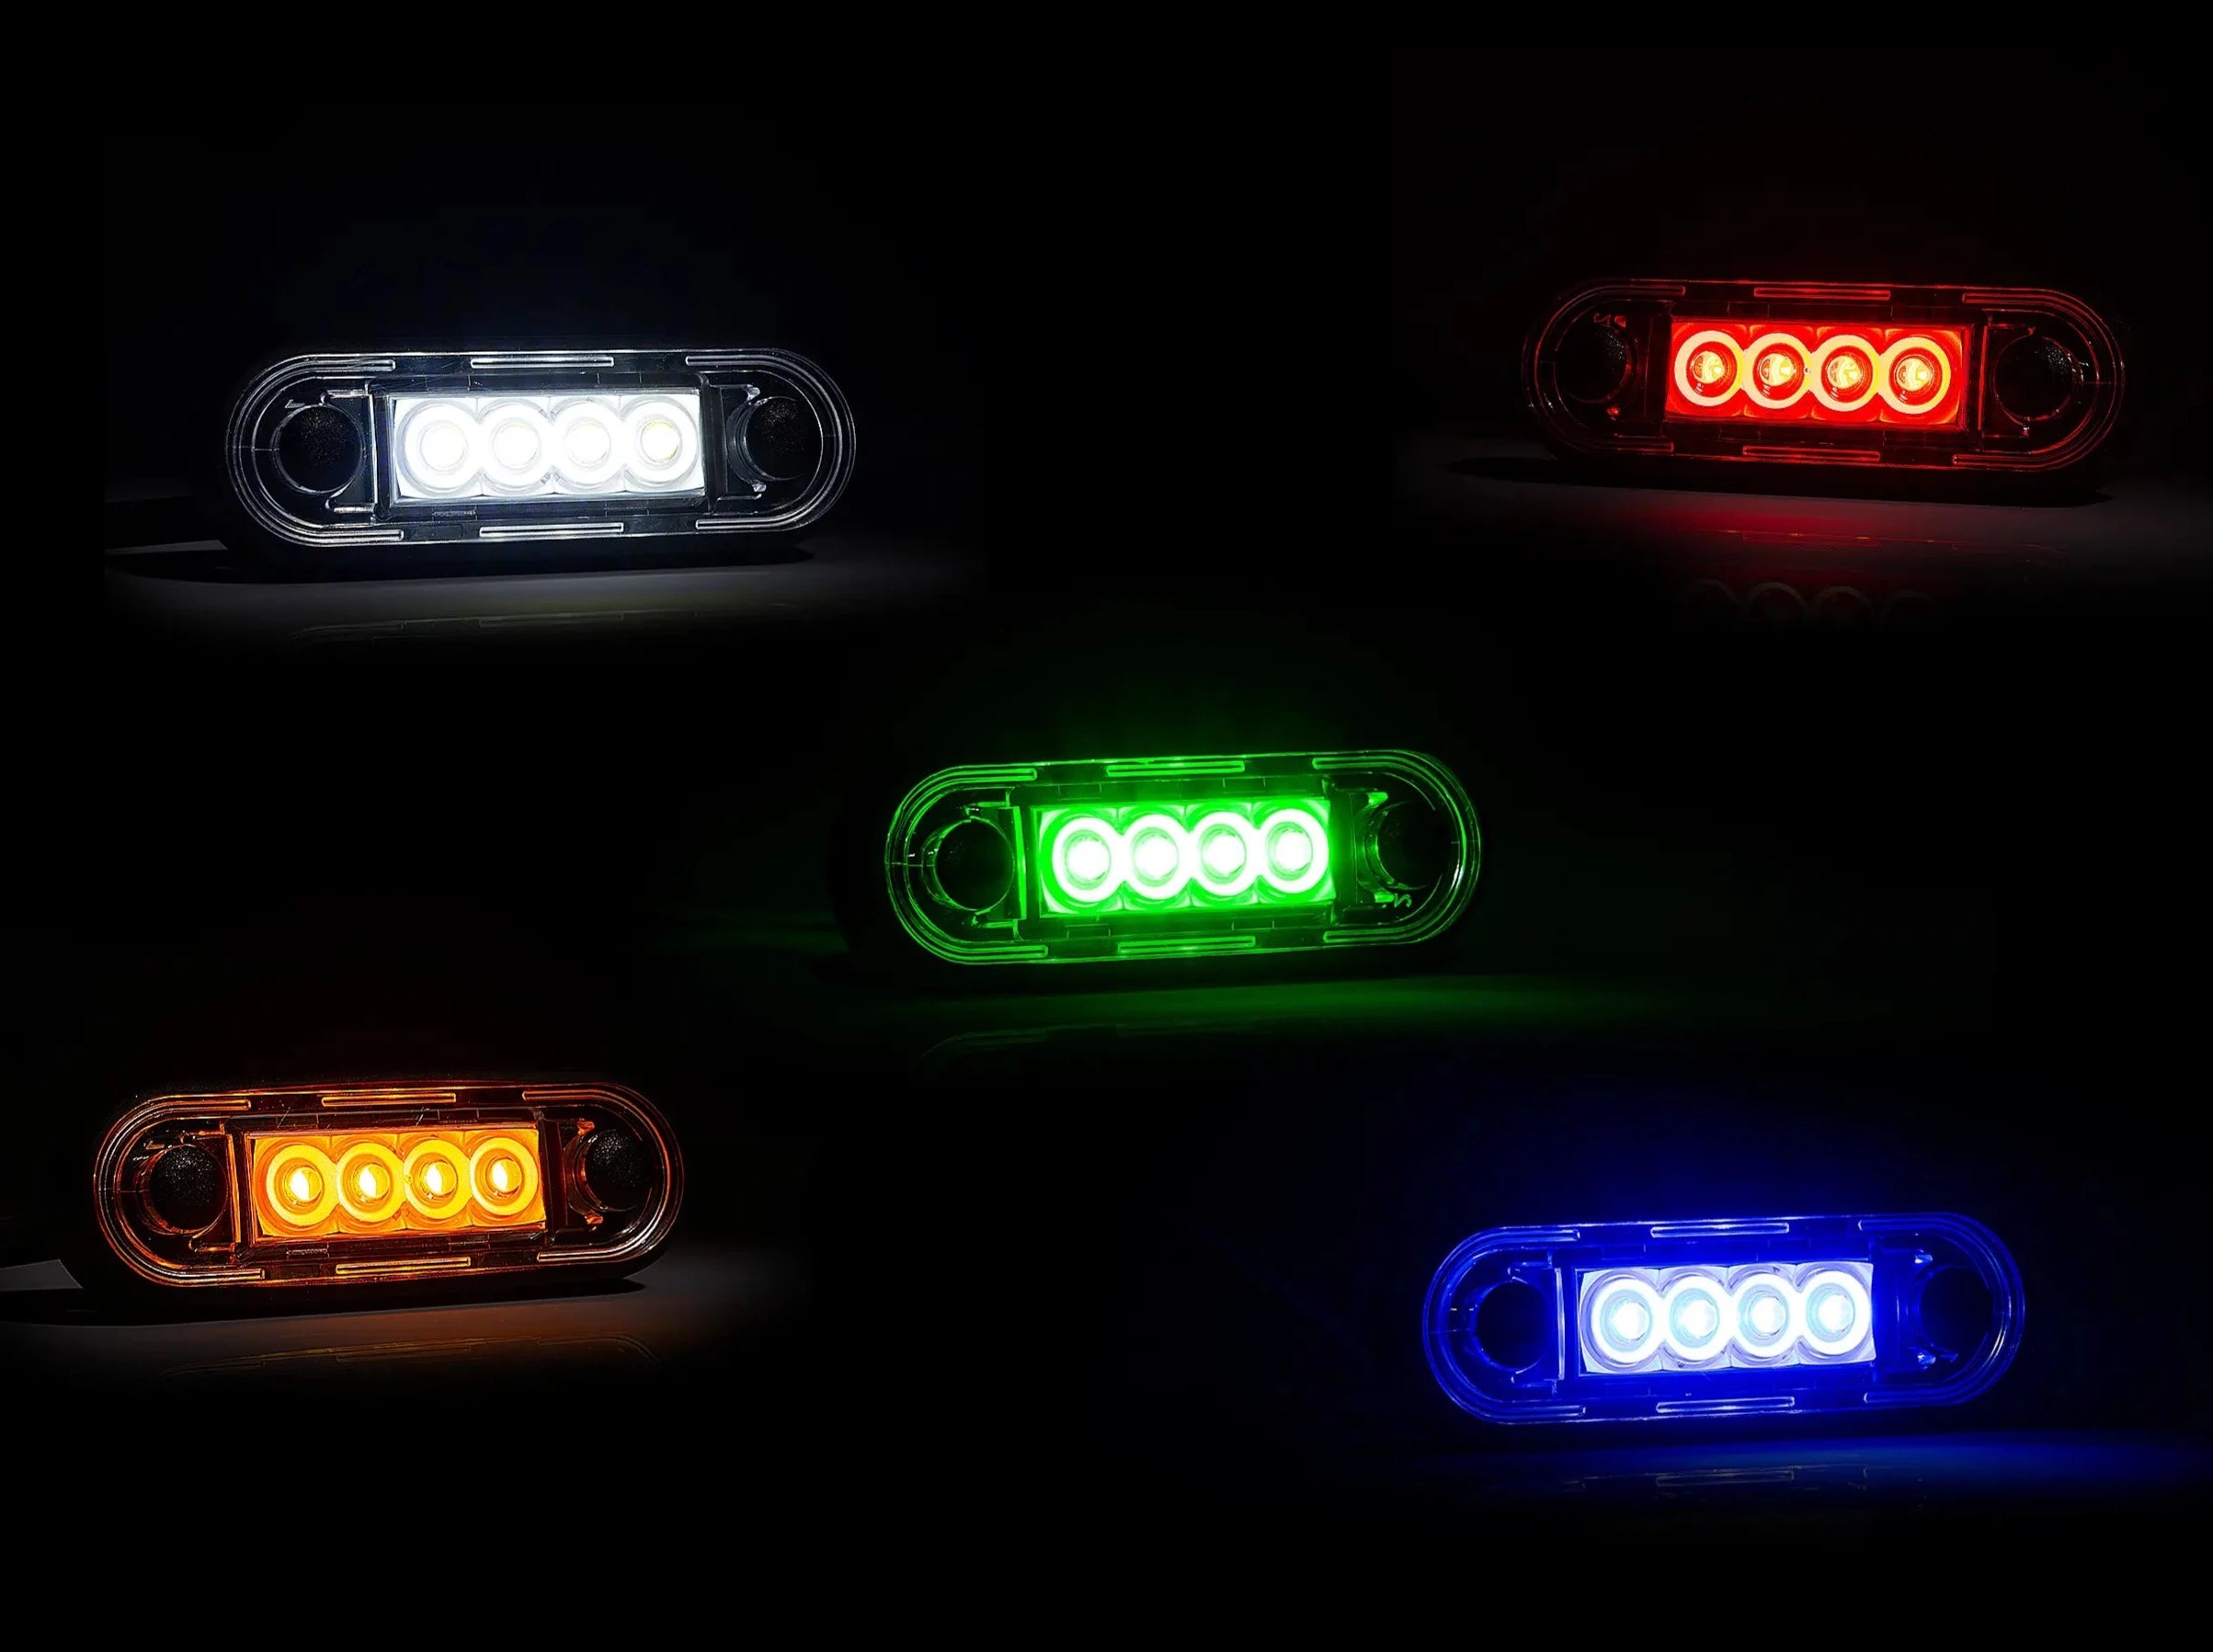 Premium LED-markeringslys for Truck Bars & Bull Bars - spo-cs-disabled - spo-default - spo-disabled - spo-notify-me-disa